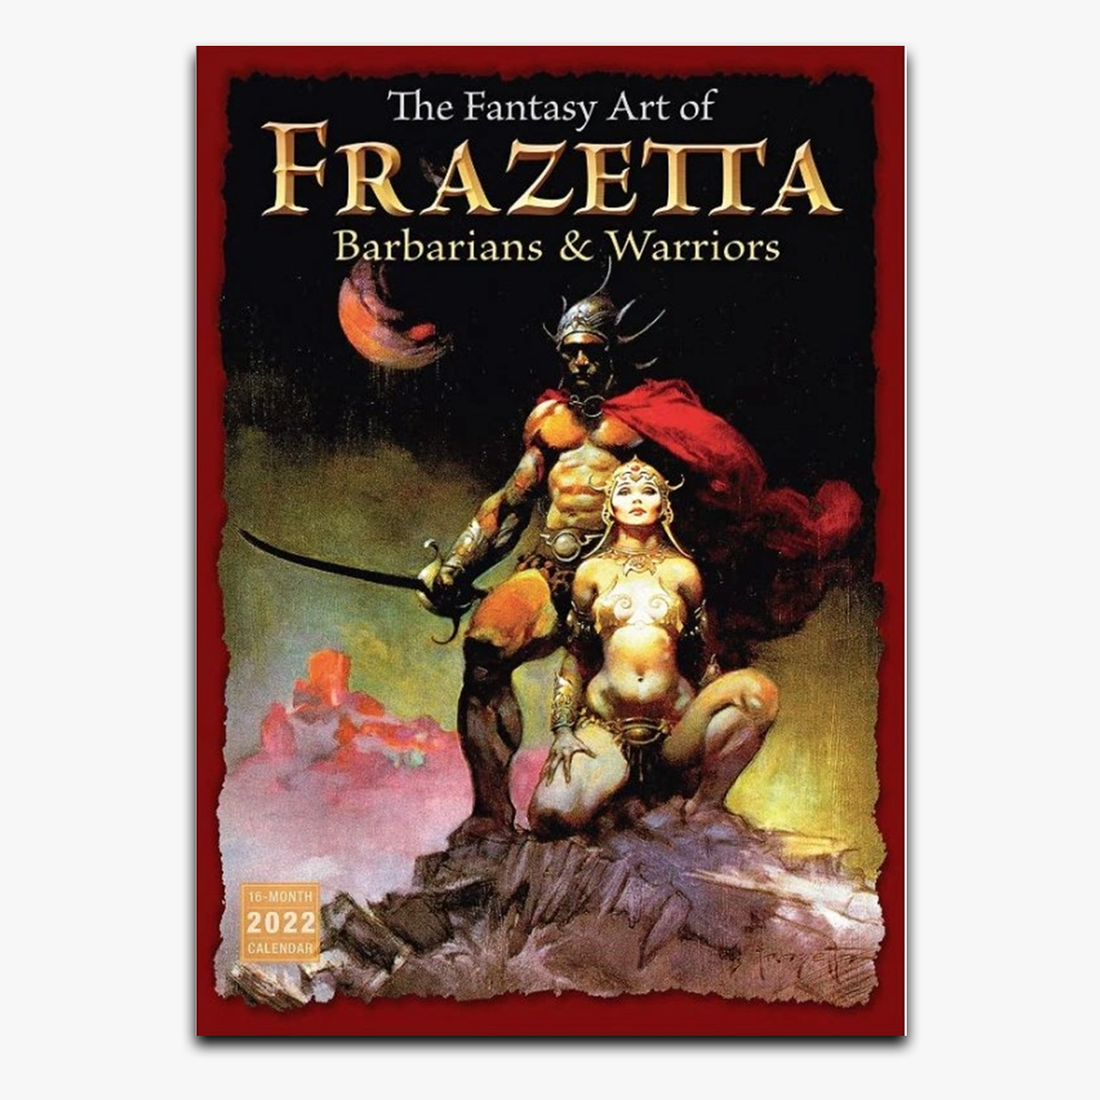 The Fantasy Art of Frazetta 2022 Wall Calendar 16 Month